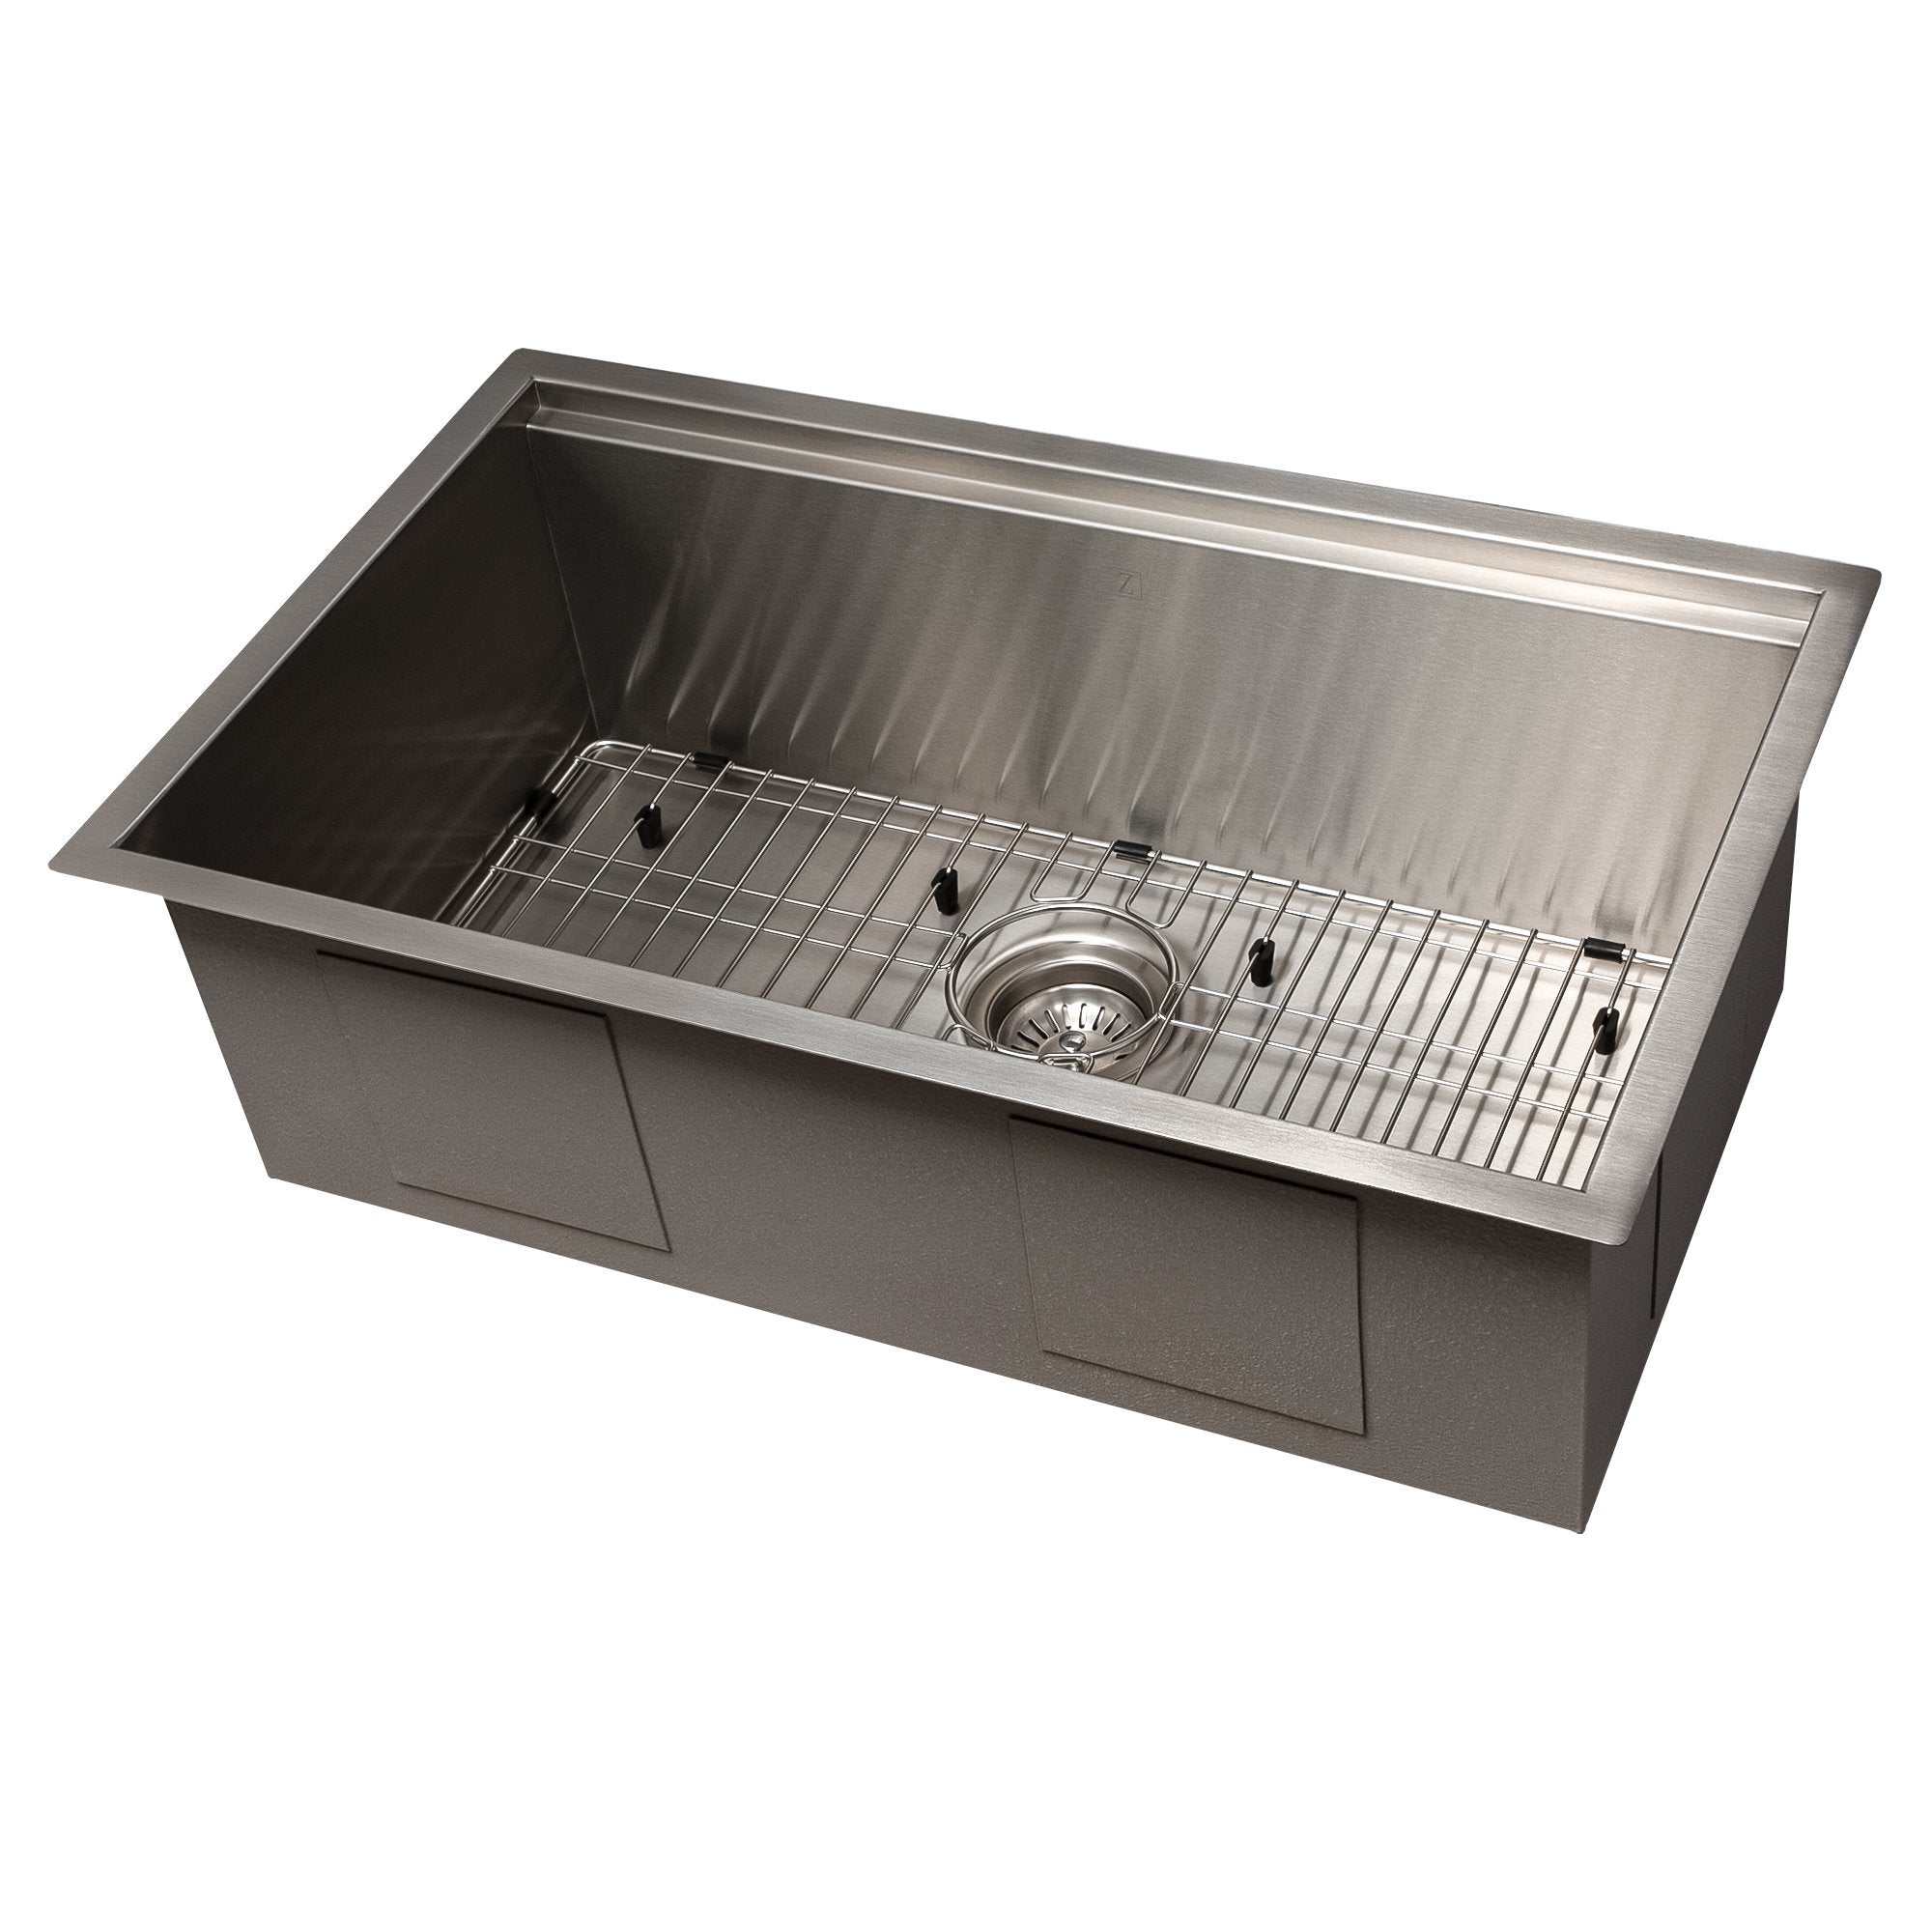 ZLINE Garmisch 30" Undermount Single Bowl Sink with Accessories (SLS) -  - ZLINE Kitchen and Bath -